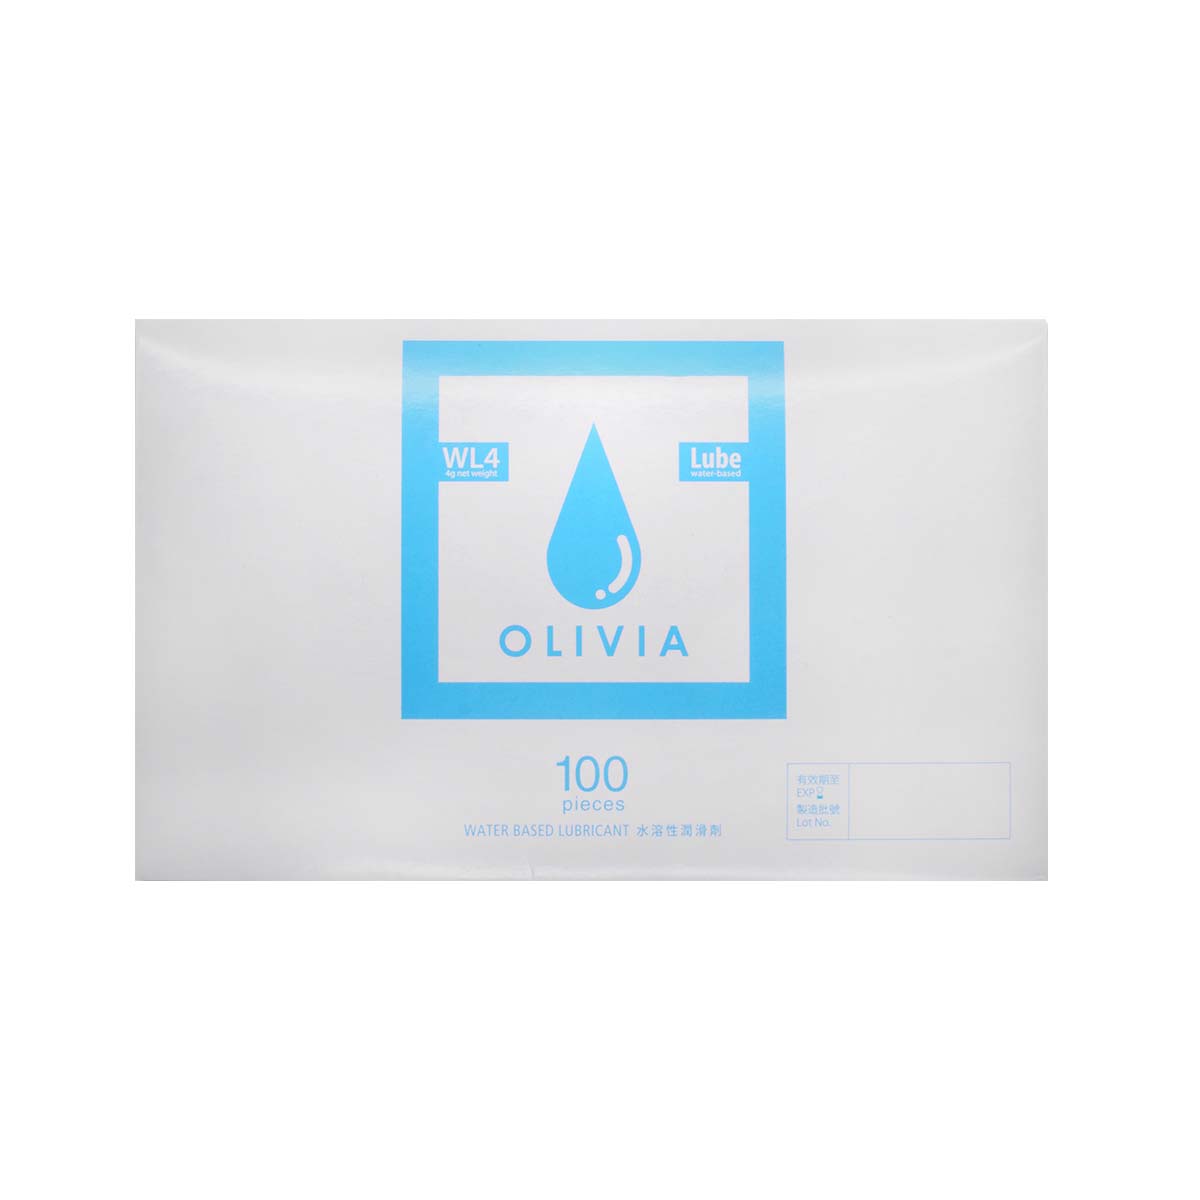 奥莉维亚 WL4 旅行小包装 100 片装 水基润滑剂-p_2